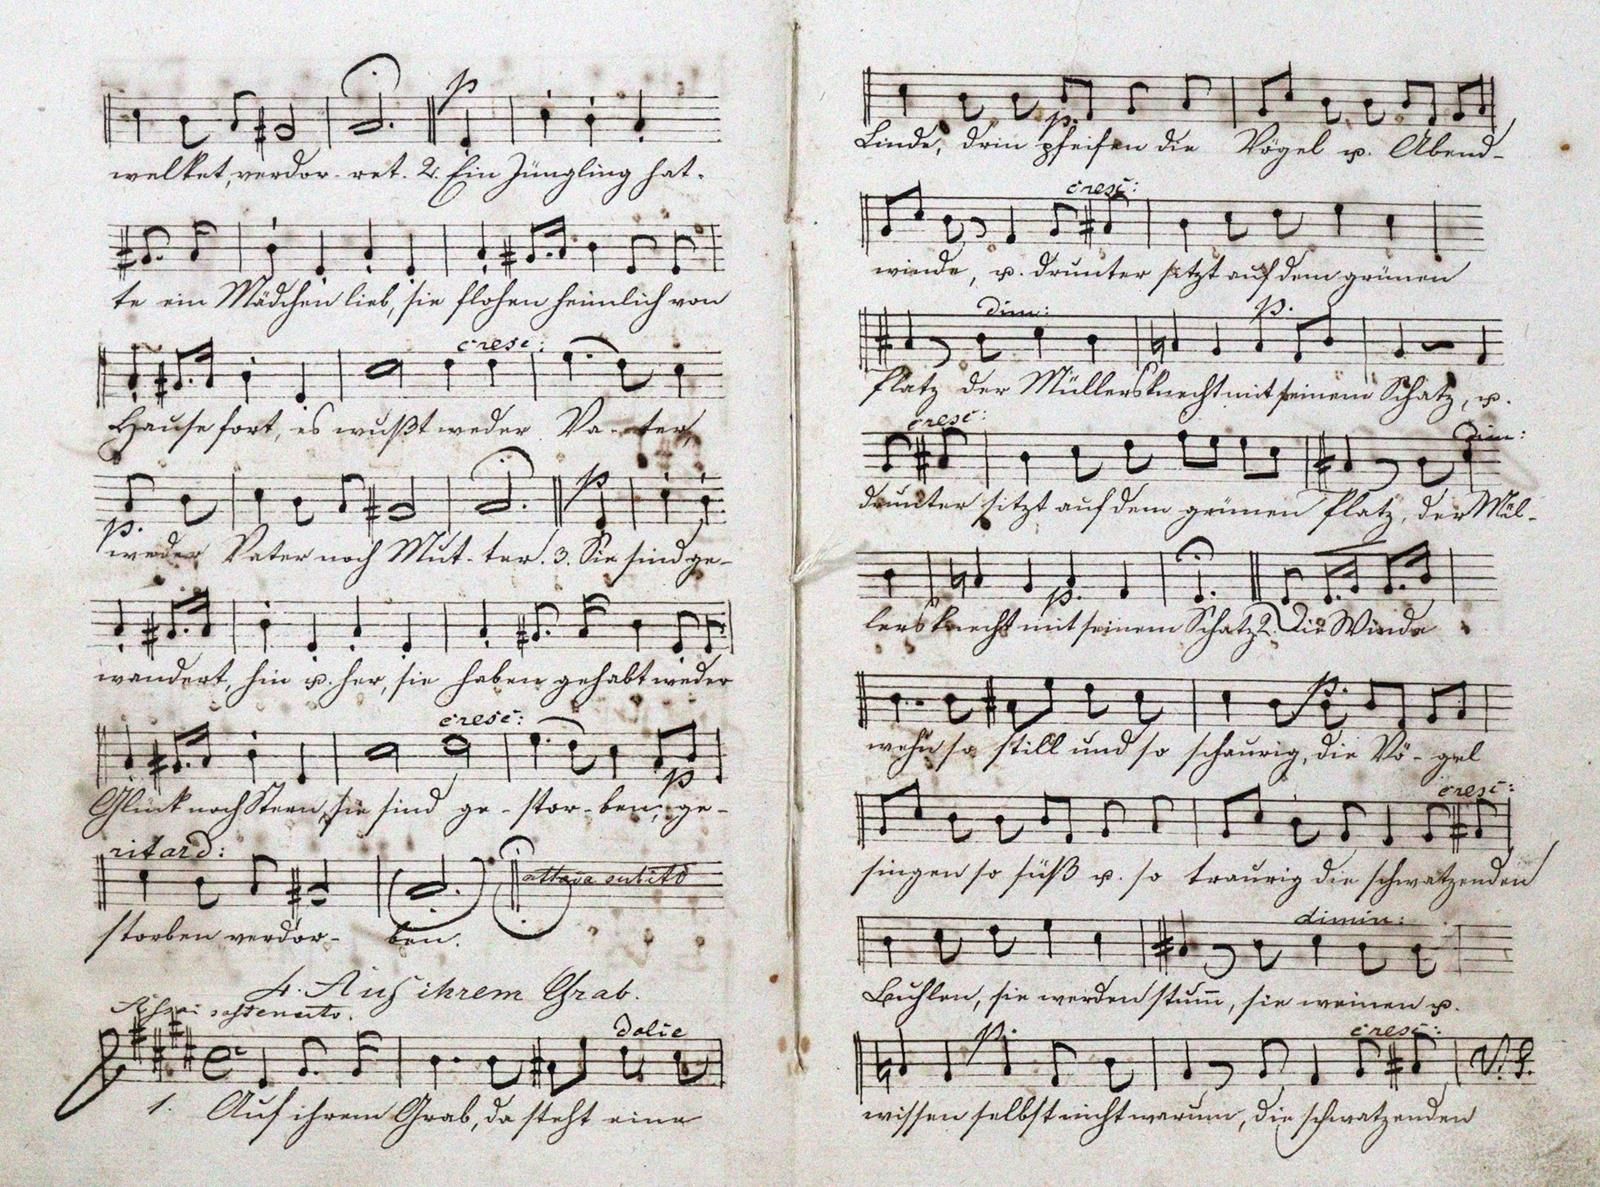 Papst,W. Lieder für Sopran, Alt, Tenor u. Basso, componirt von Felix Mendels(s)o&hellip;